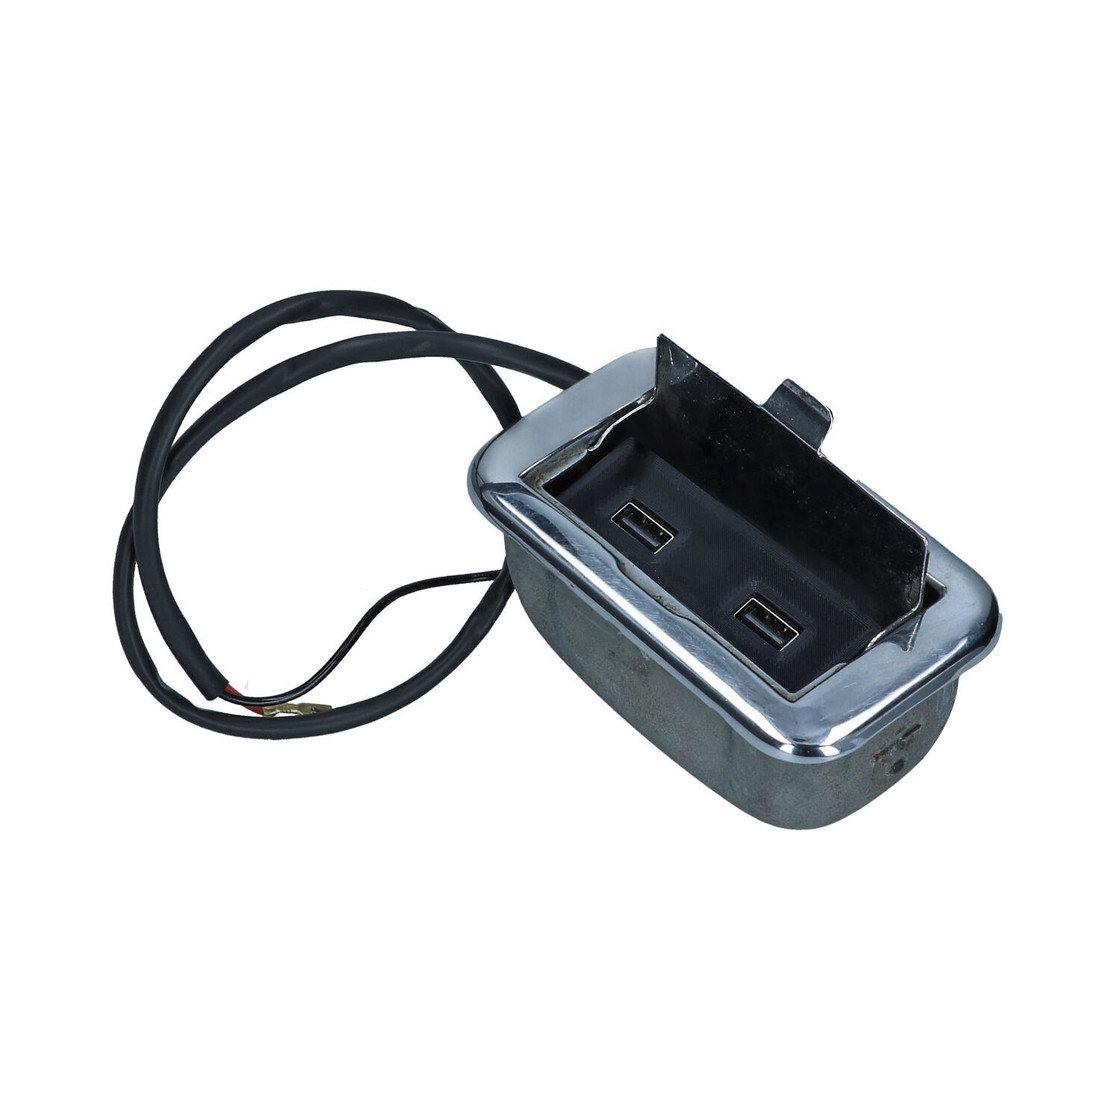 https://bus-ok.nl/media/image/product/14886/lg/type2-split-smart-usb-mobile-charger-for-ashtray-6-12.jpg